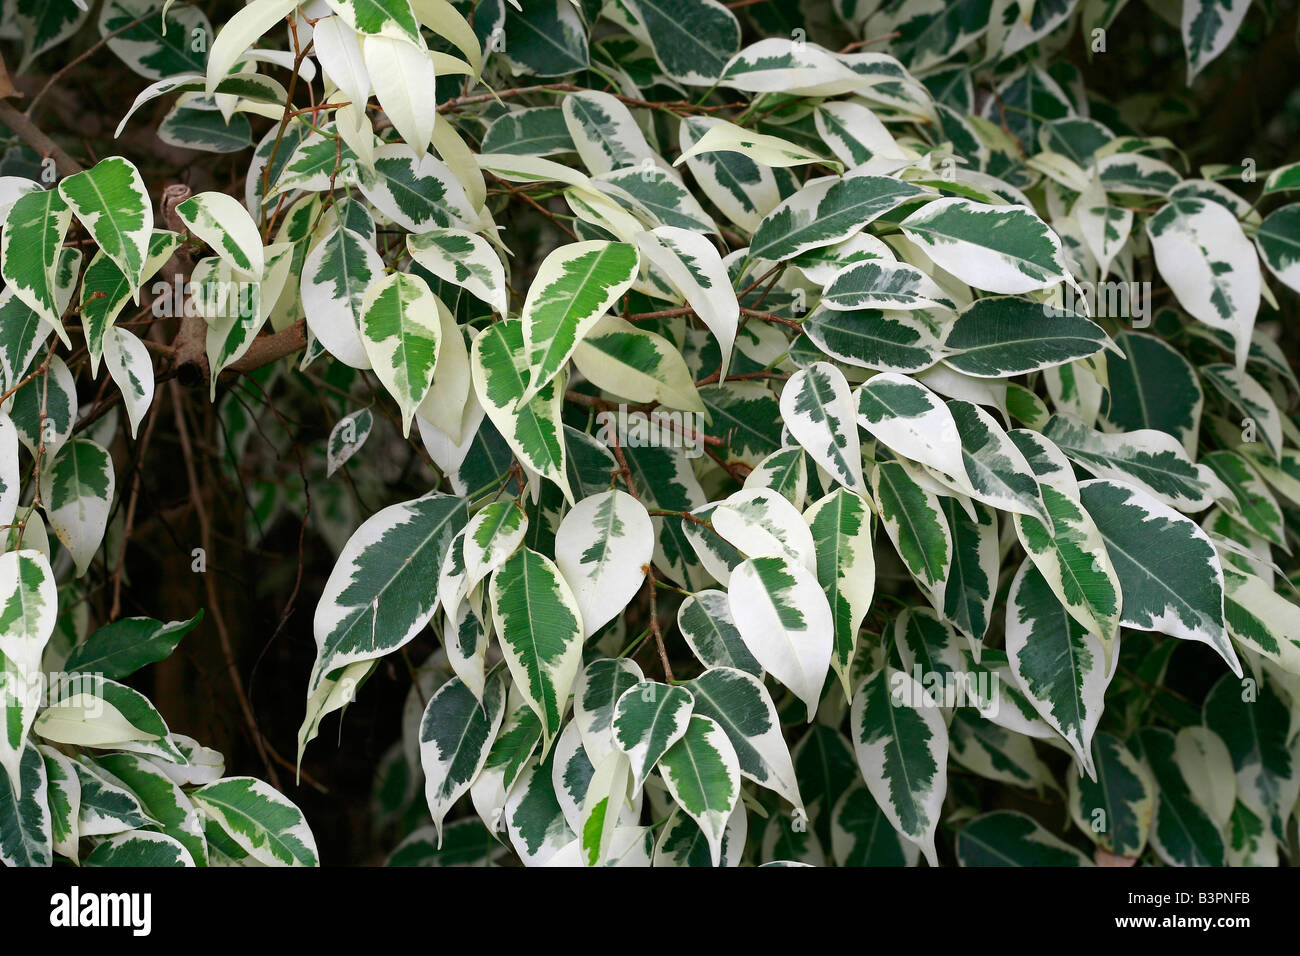 Ficus benjamina "Variegata Stock Photo: 19554175 - Alamy